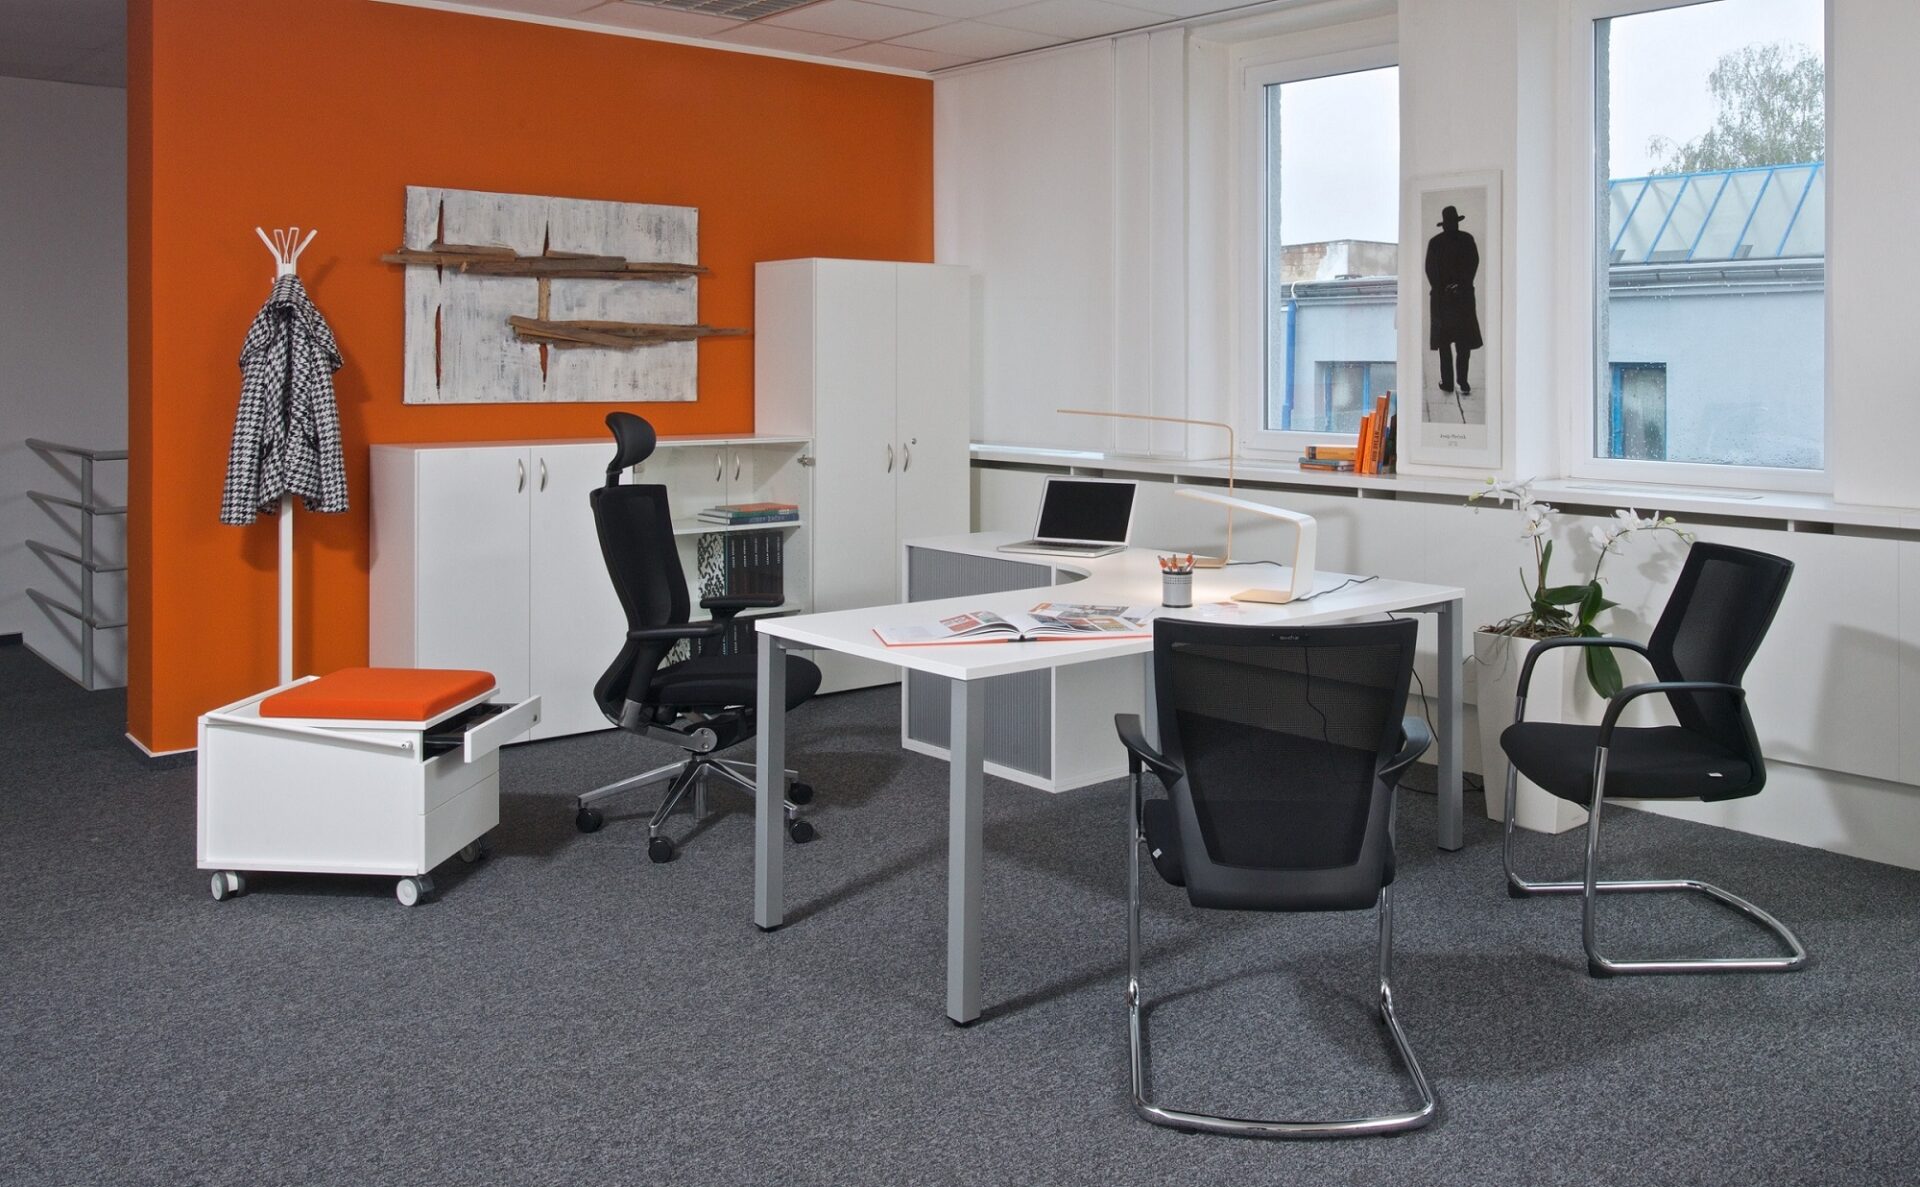 Vybavení do velké kanceláře s 3D modelem vs. pár stolů na home office. Představujeme oblíbené nábytkové řady Alfa a Viva